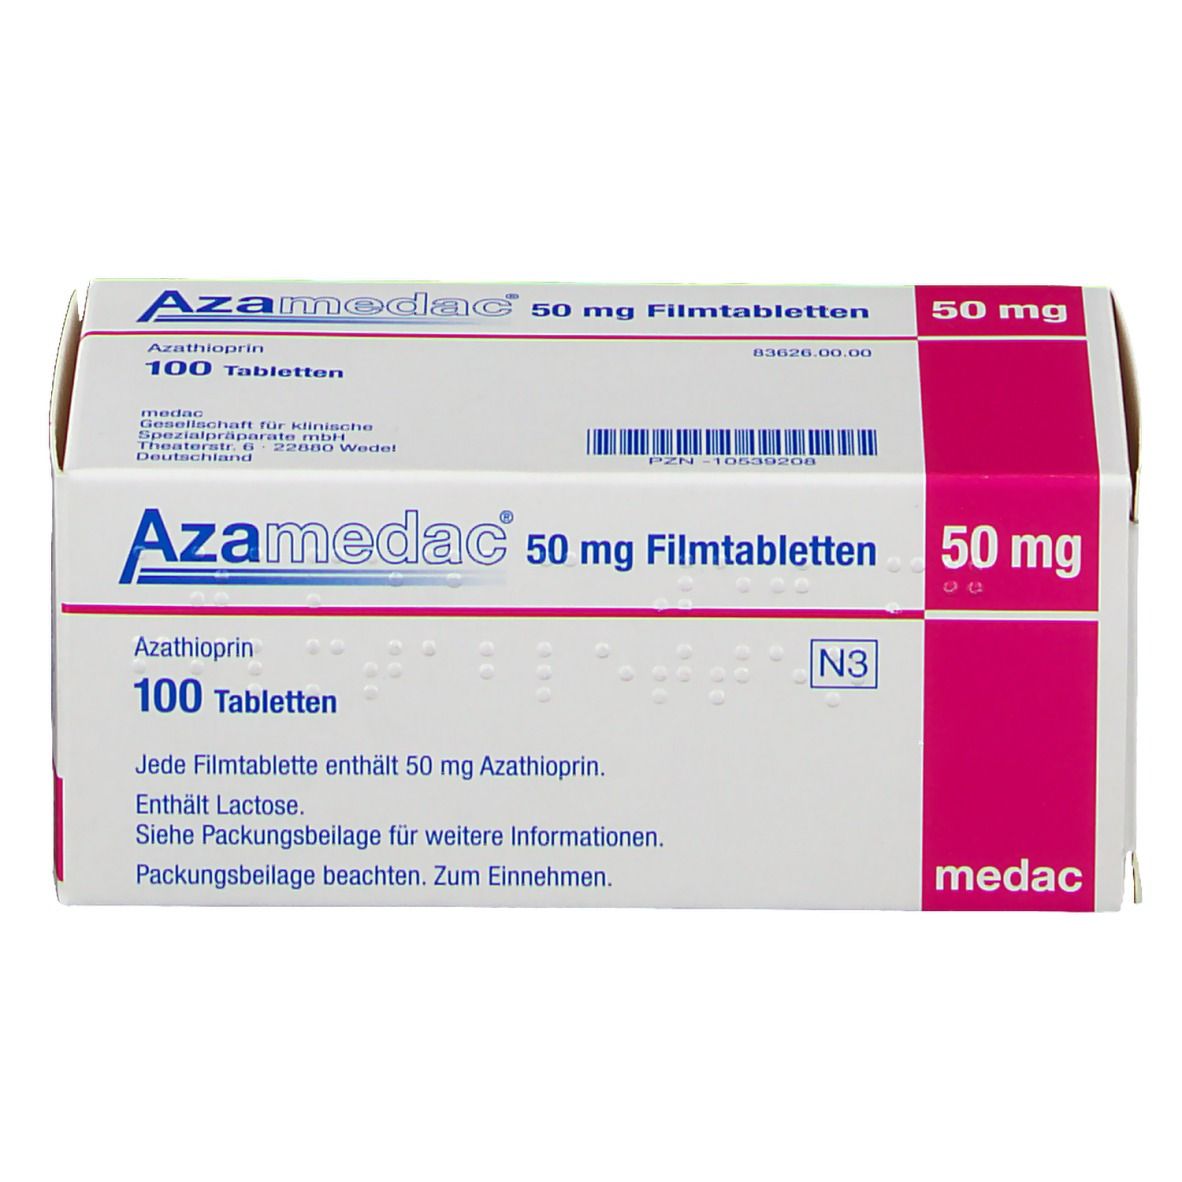 AZAMEDAC 50 mg Filmtabletten